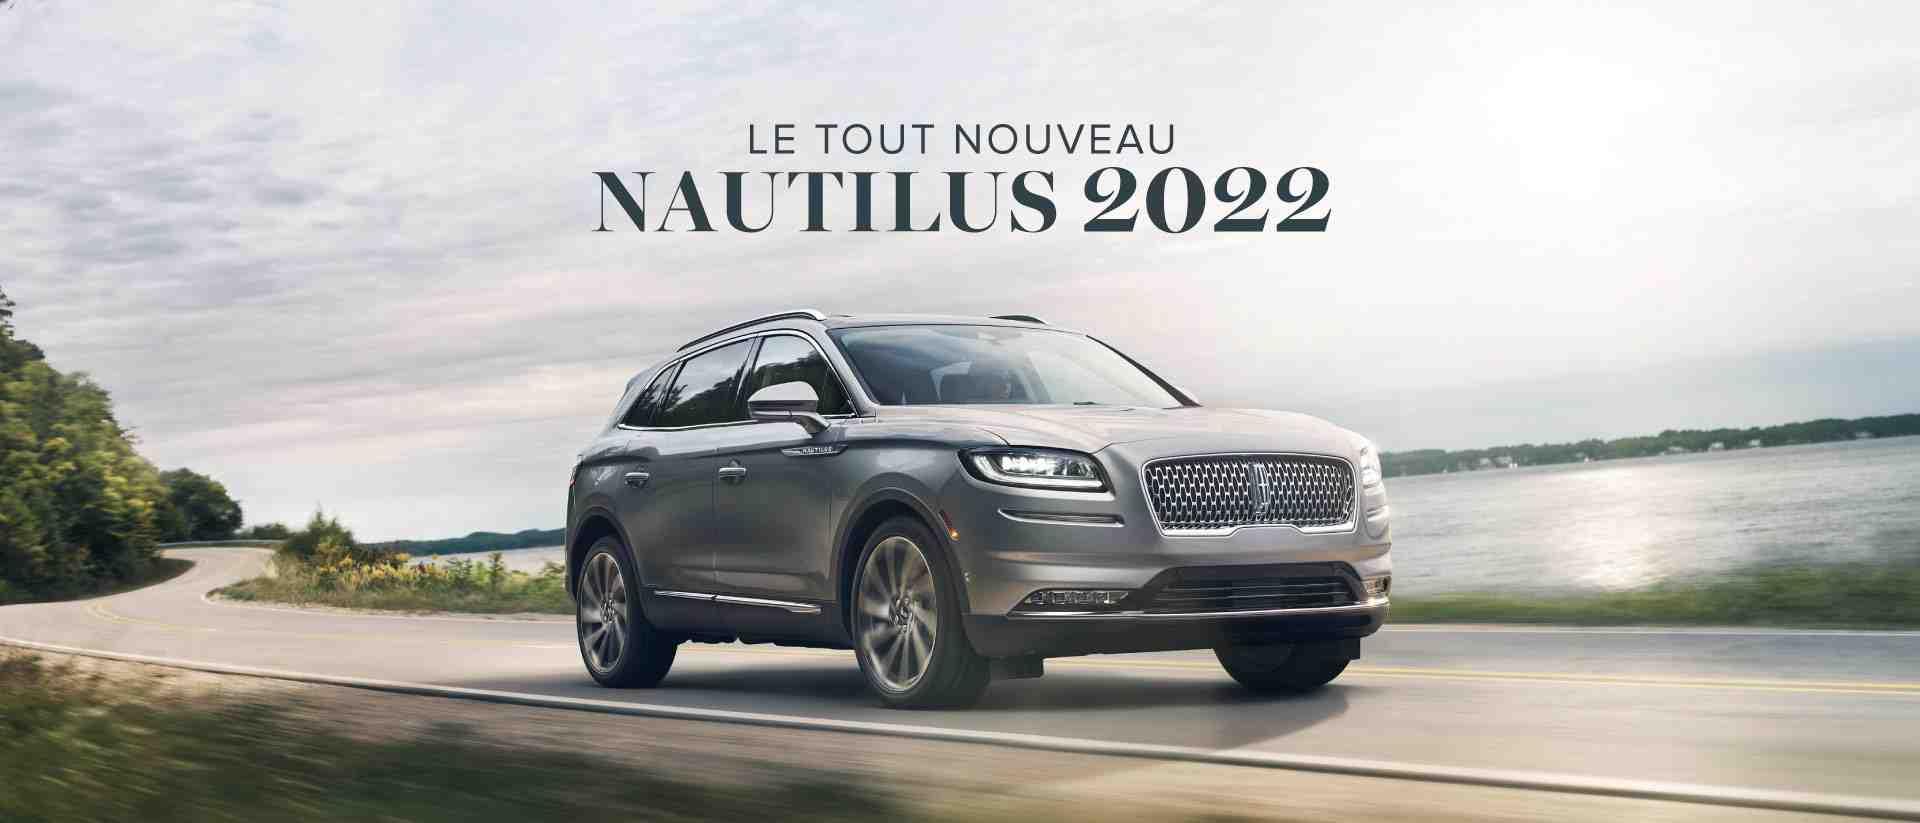 Nautilus 2022